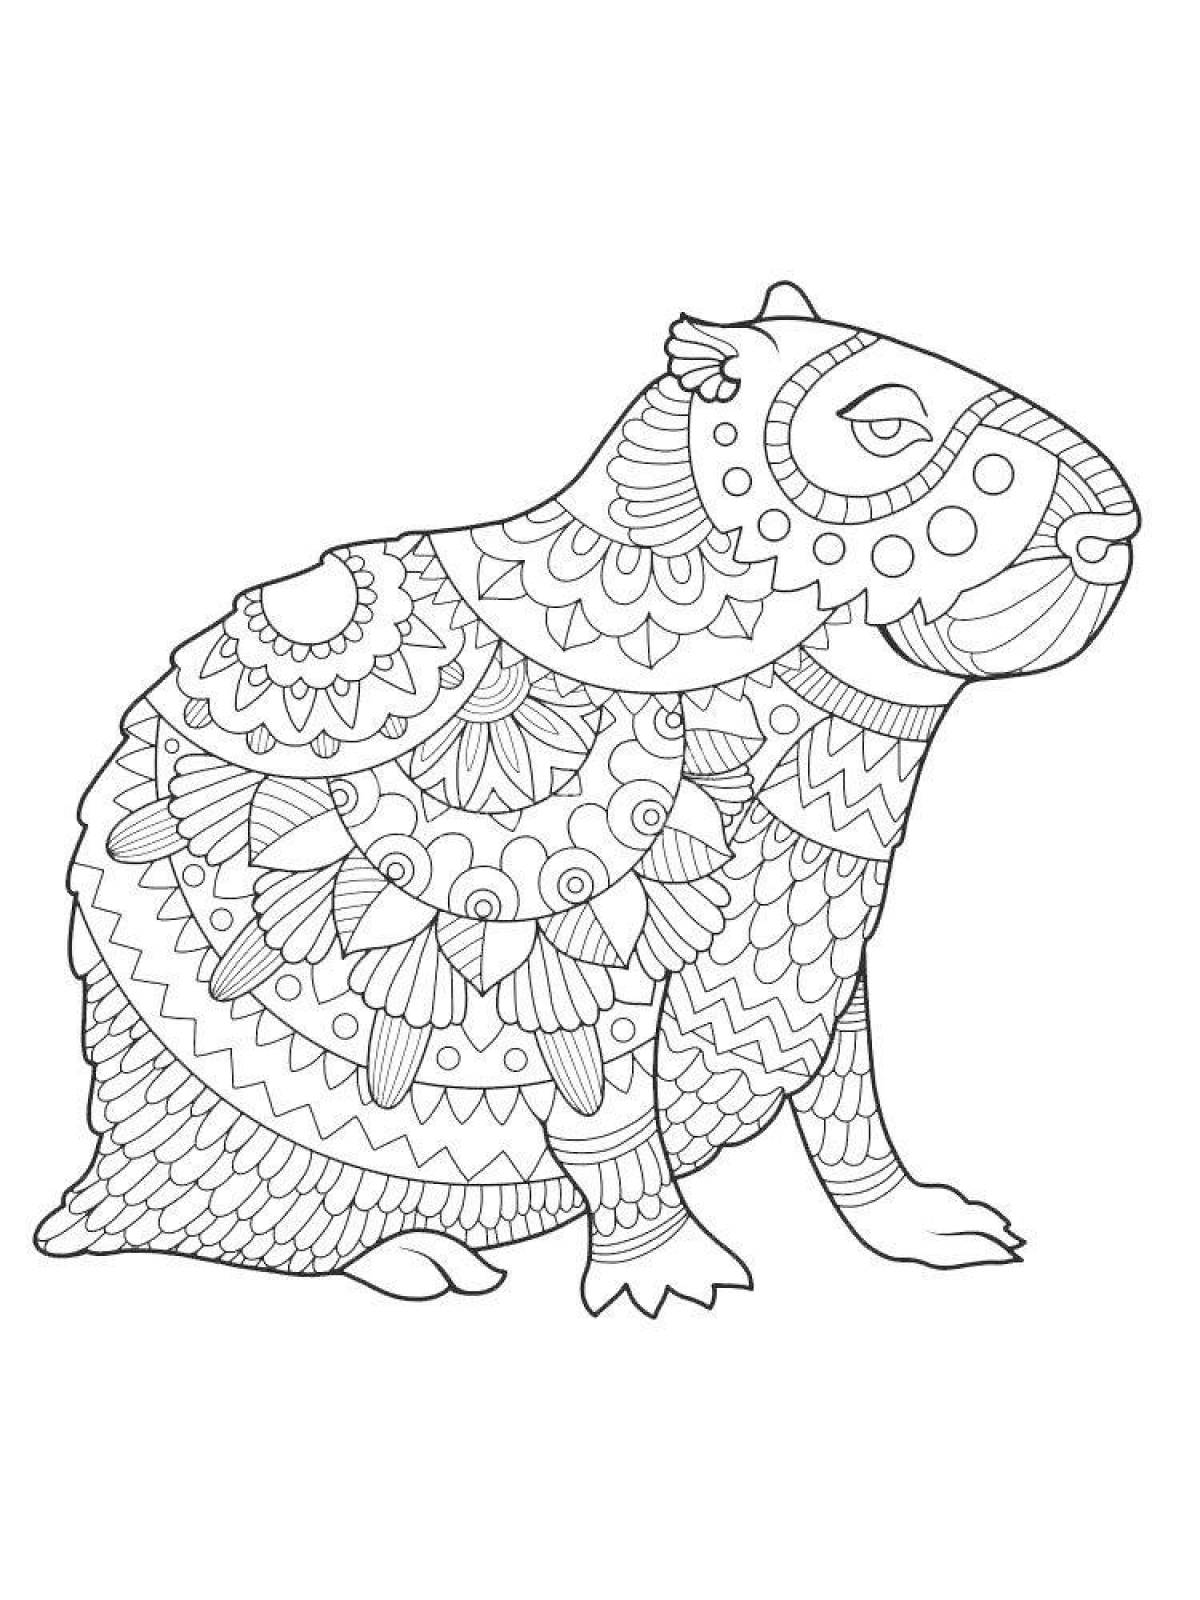 Happy capybara coloring page